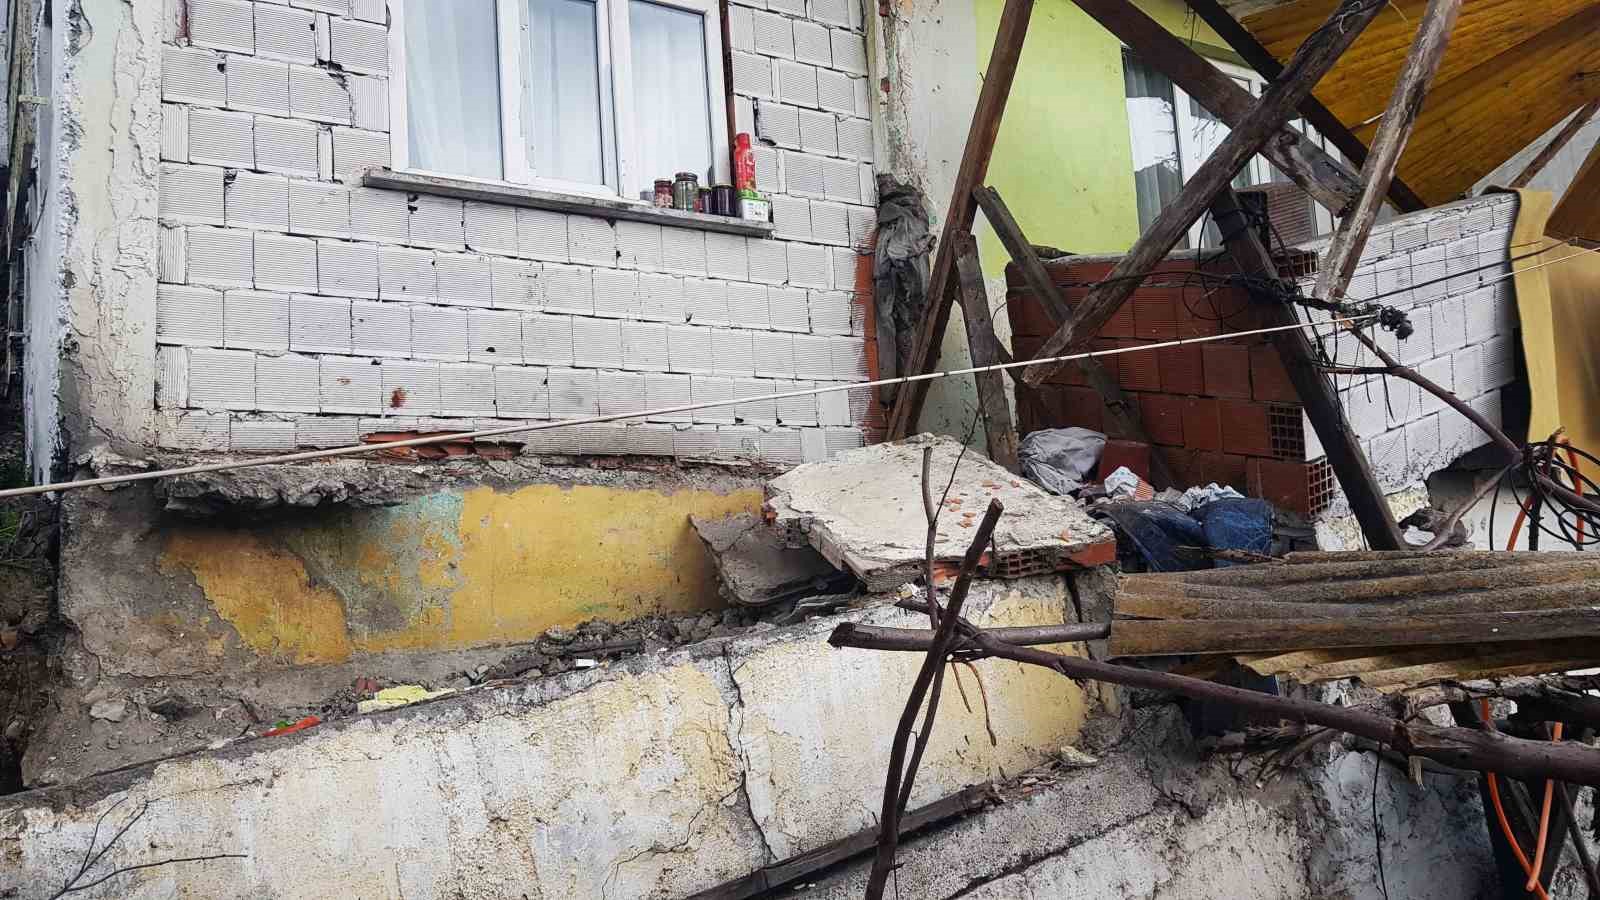 Heyelanda balkonu çöken ev boşaltıldı
